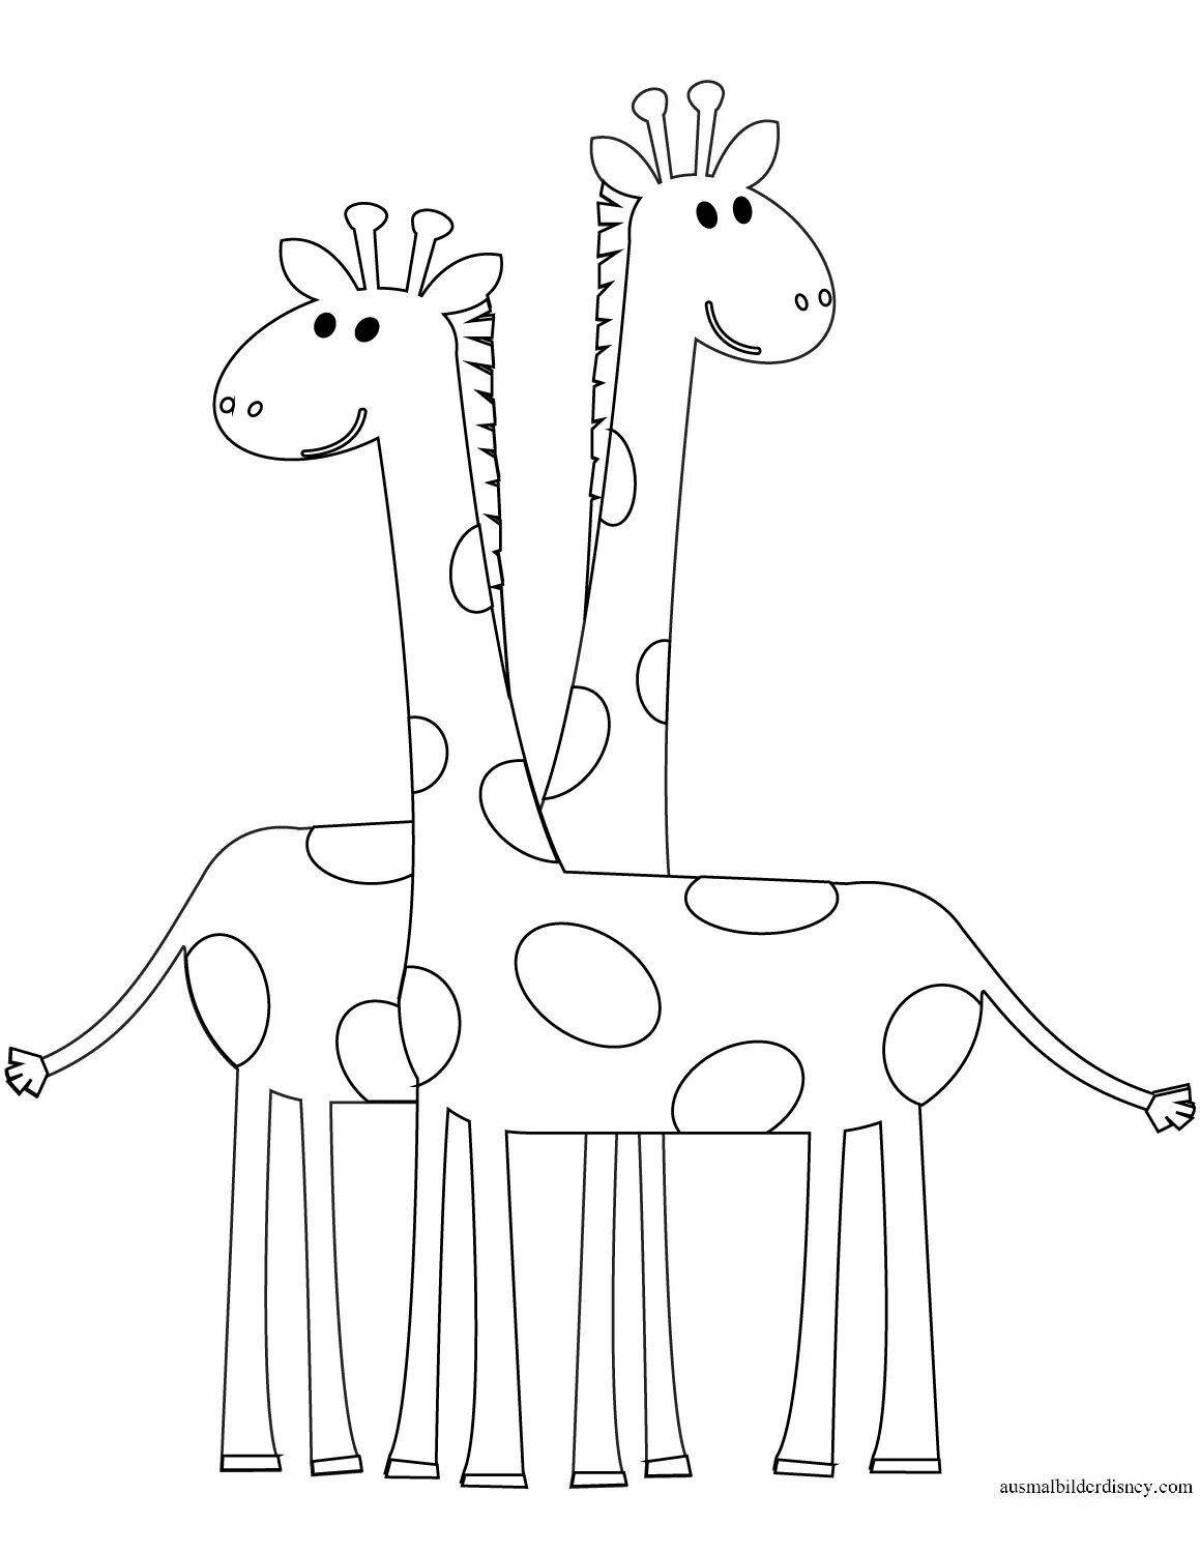 Calm giraffe coloring page